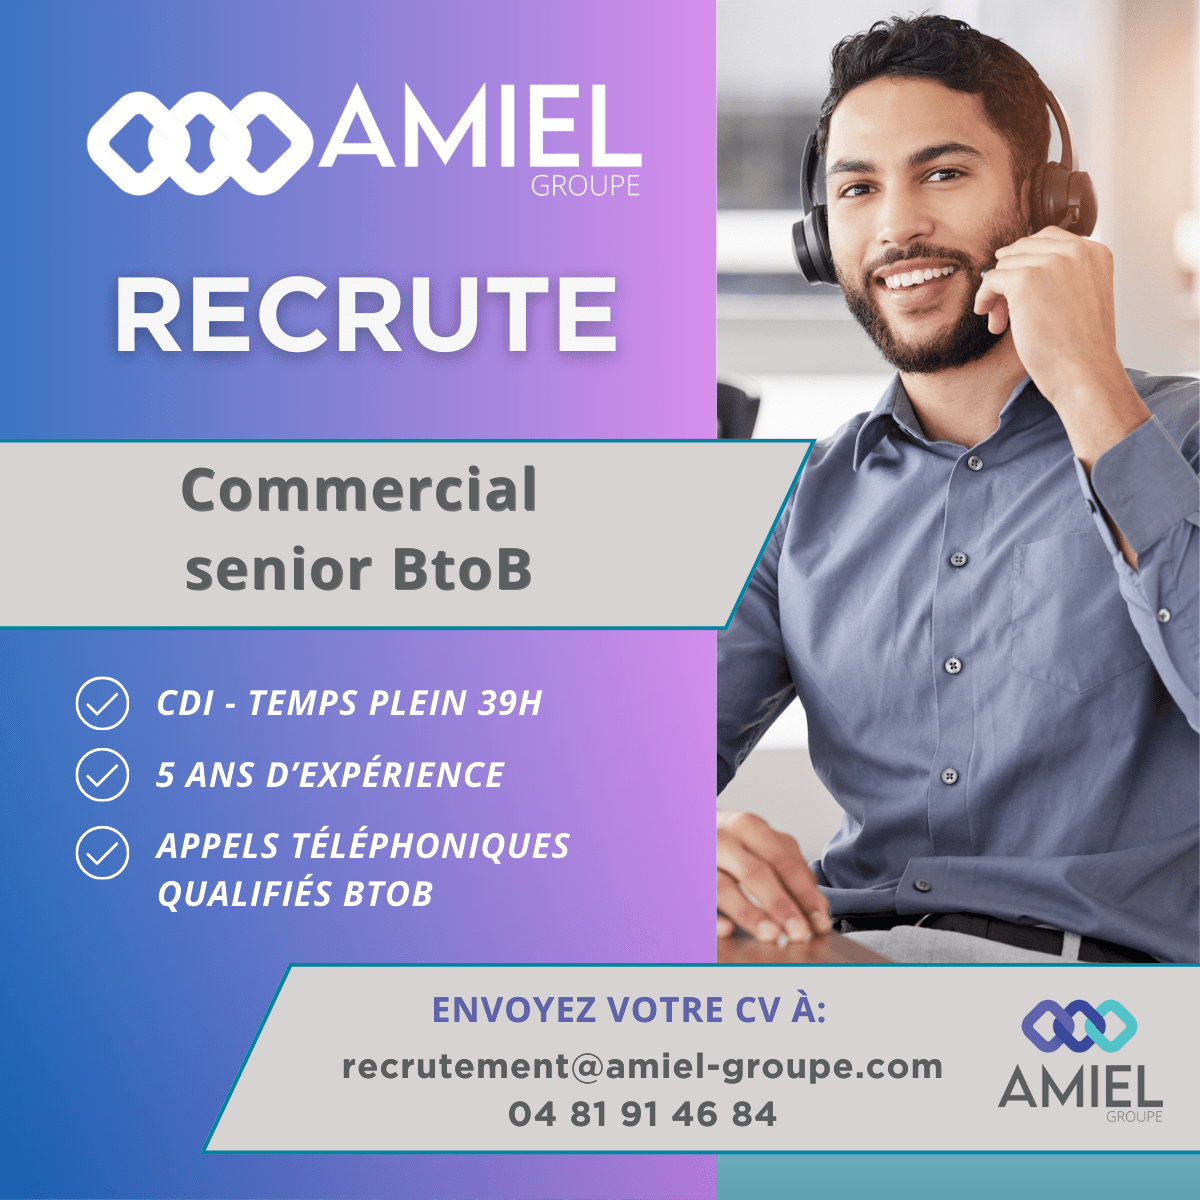 Recrutement Amiel : Commercial senior BtoB